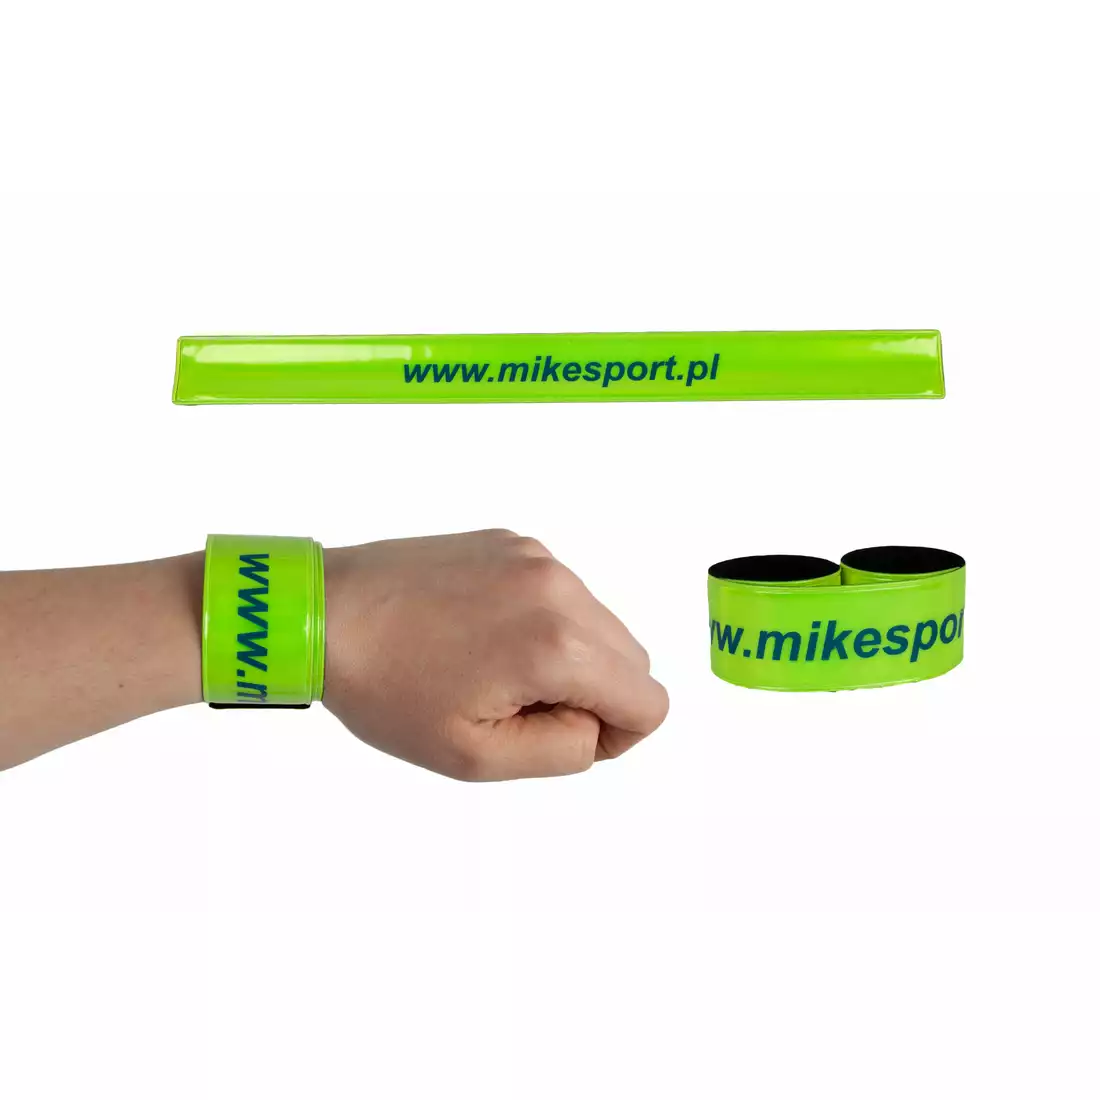 Mikesport - opaska odblaskowa. logo - fluor